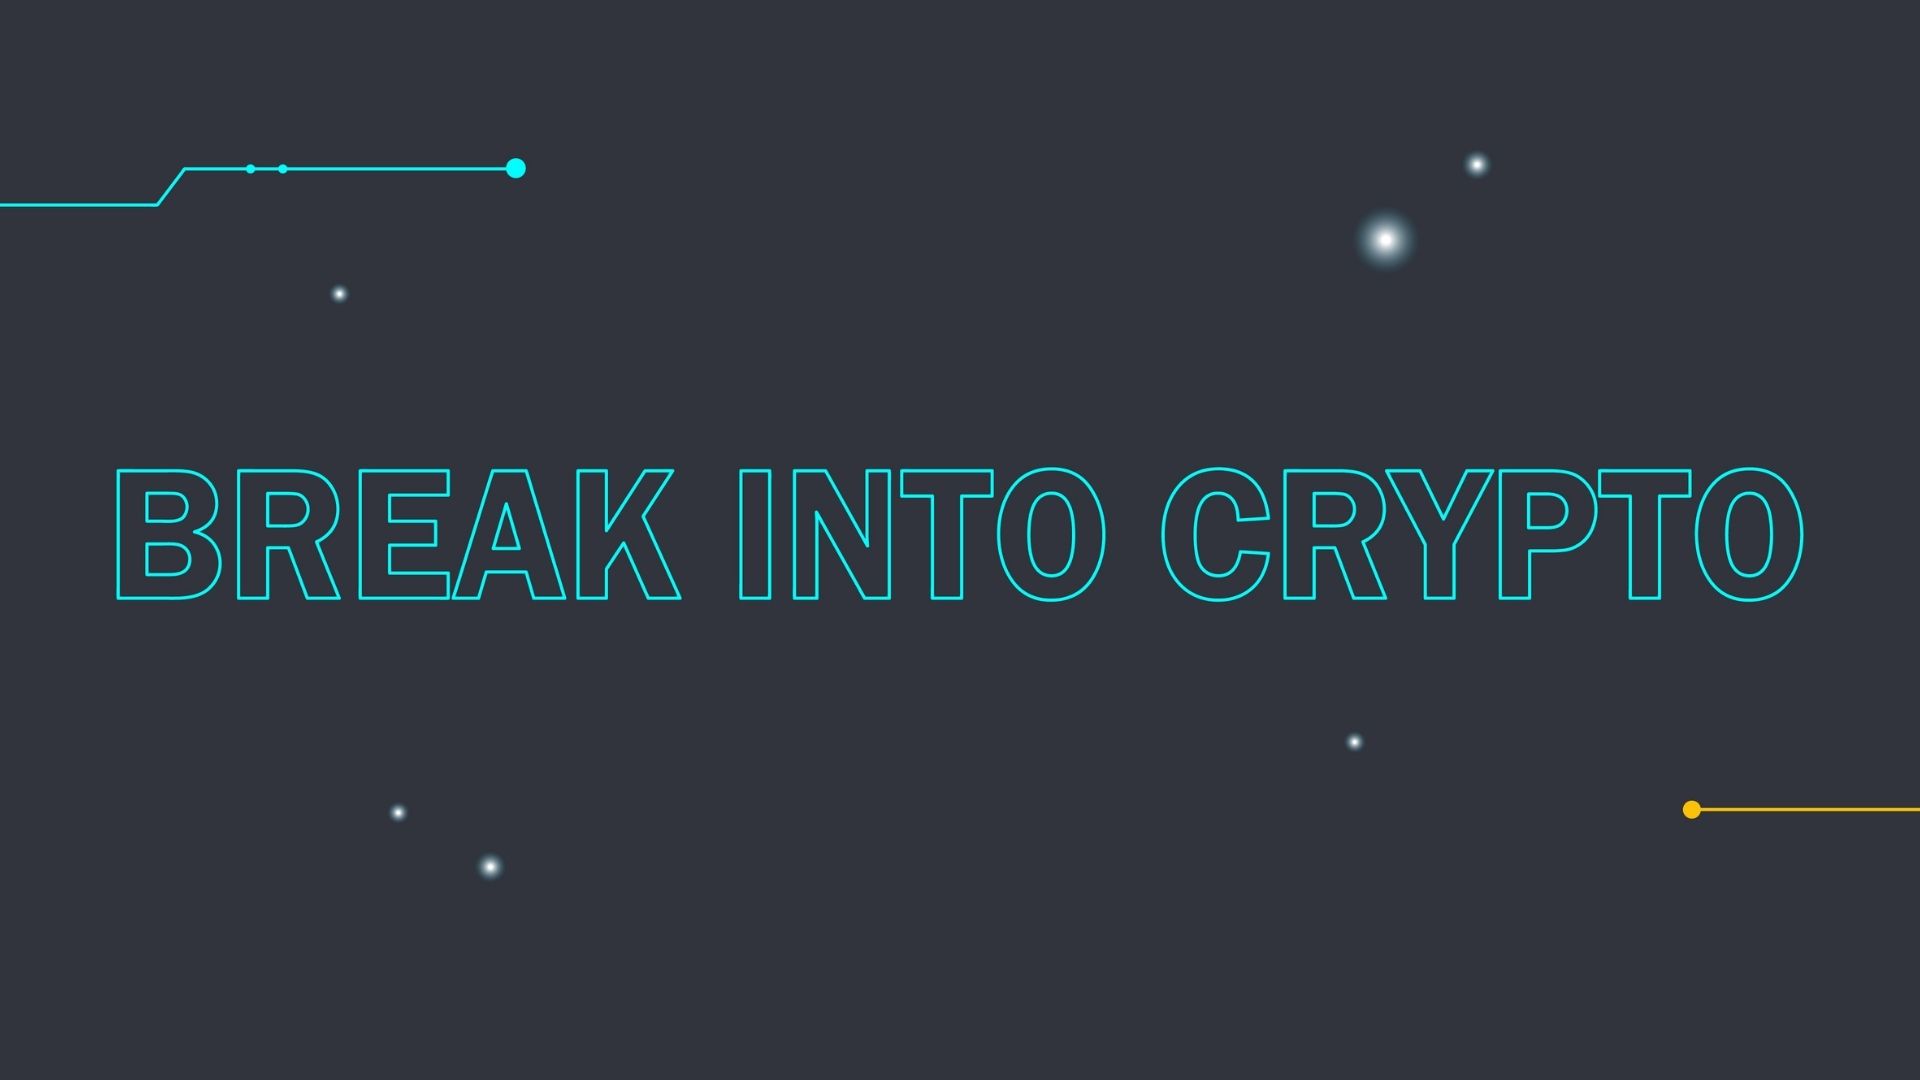 Break into crypto | Animated video